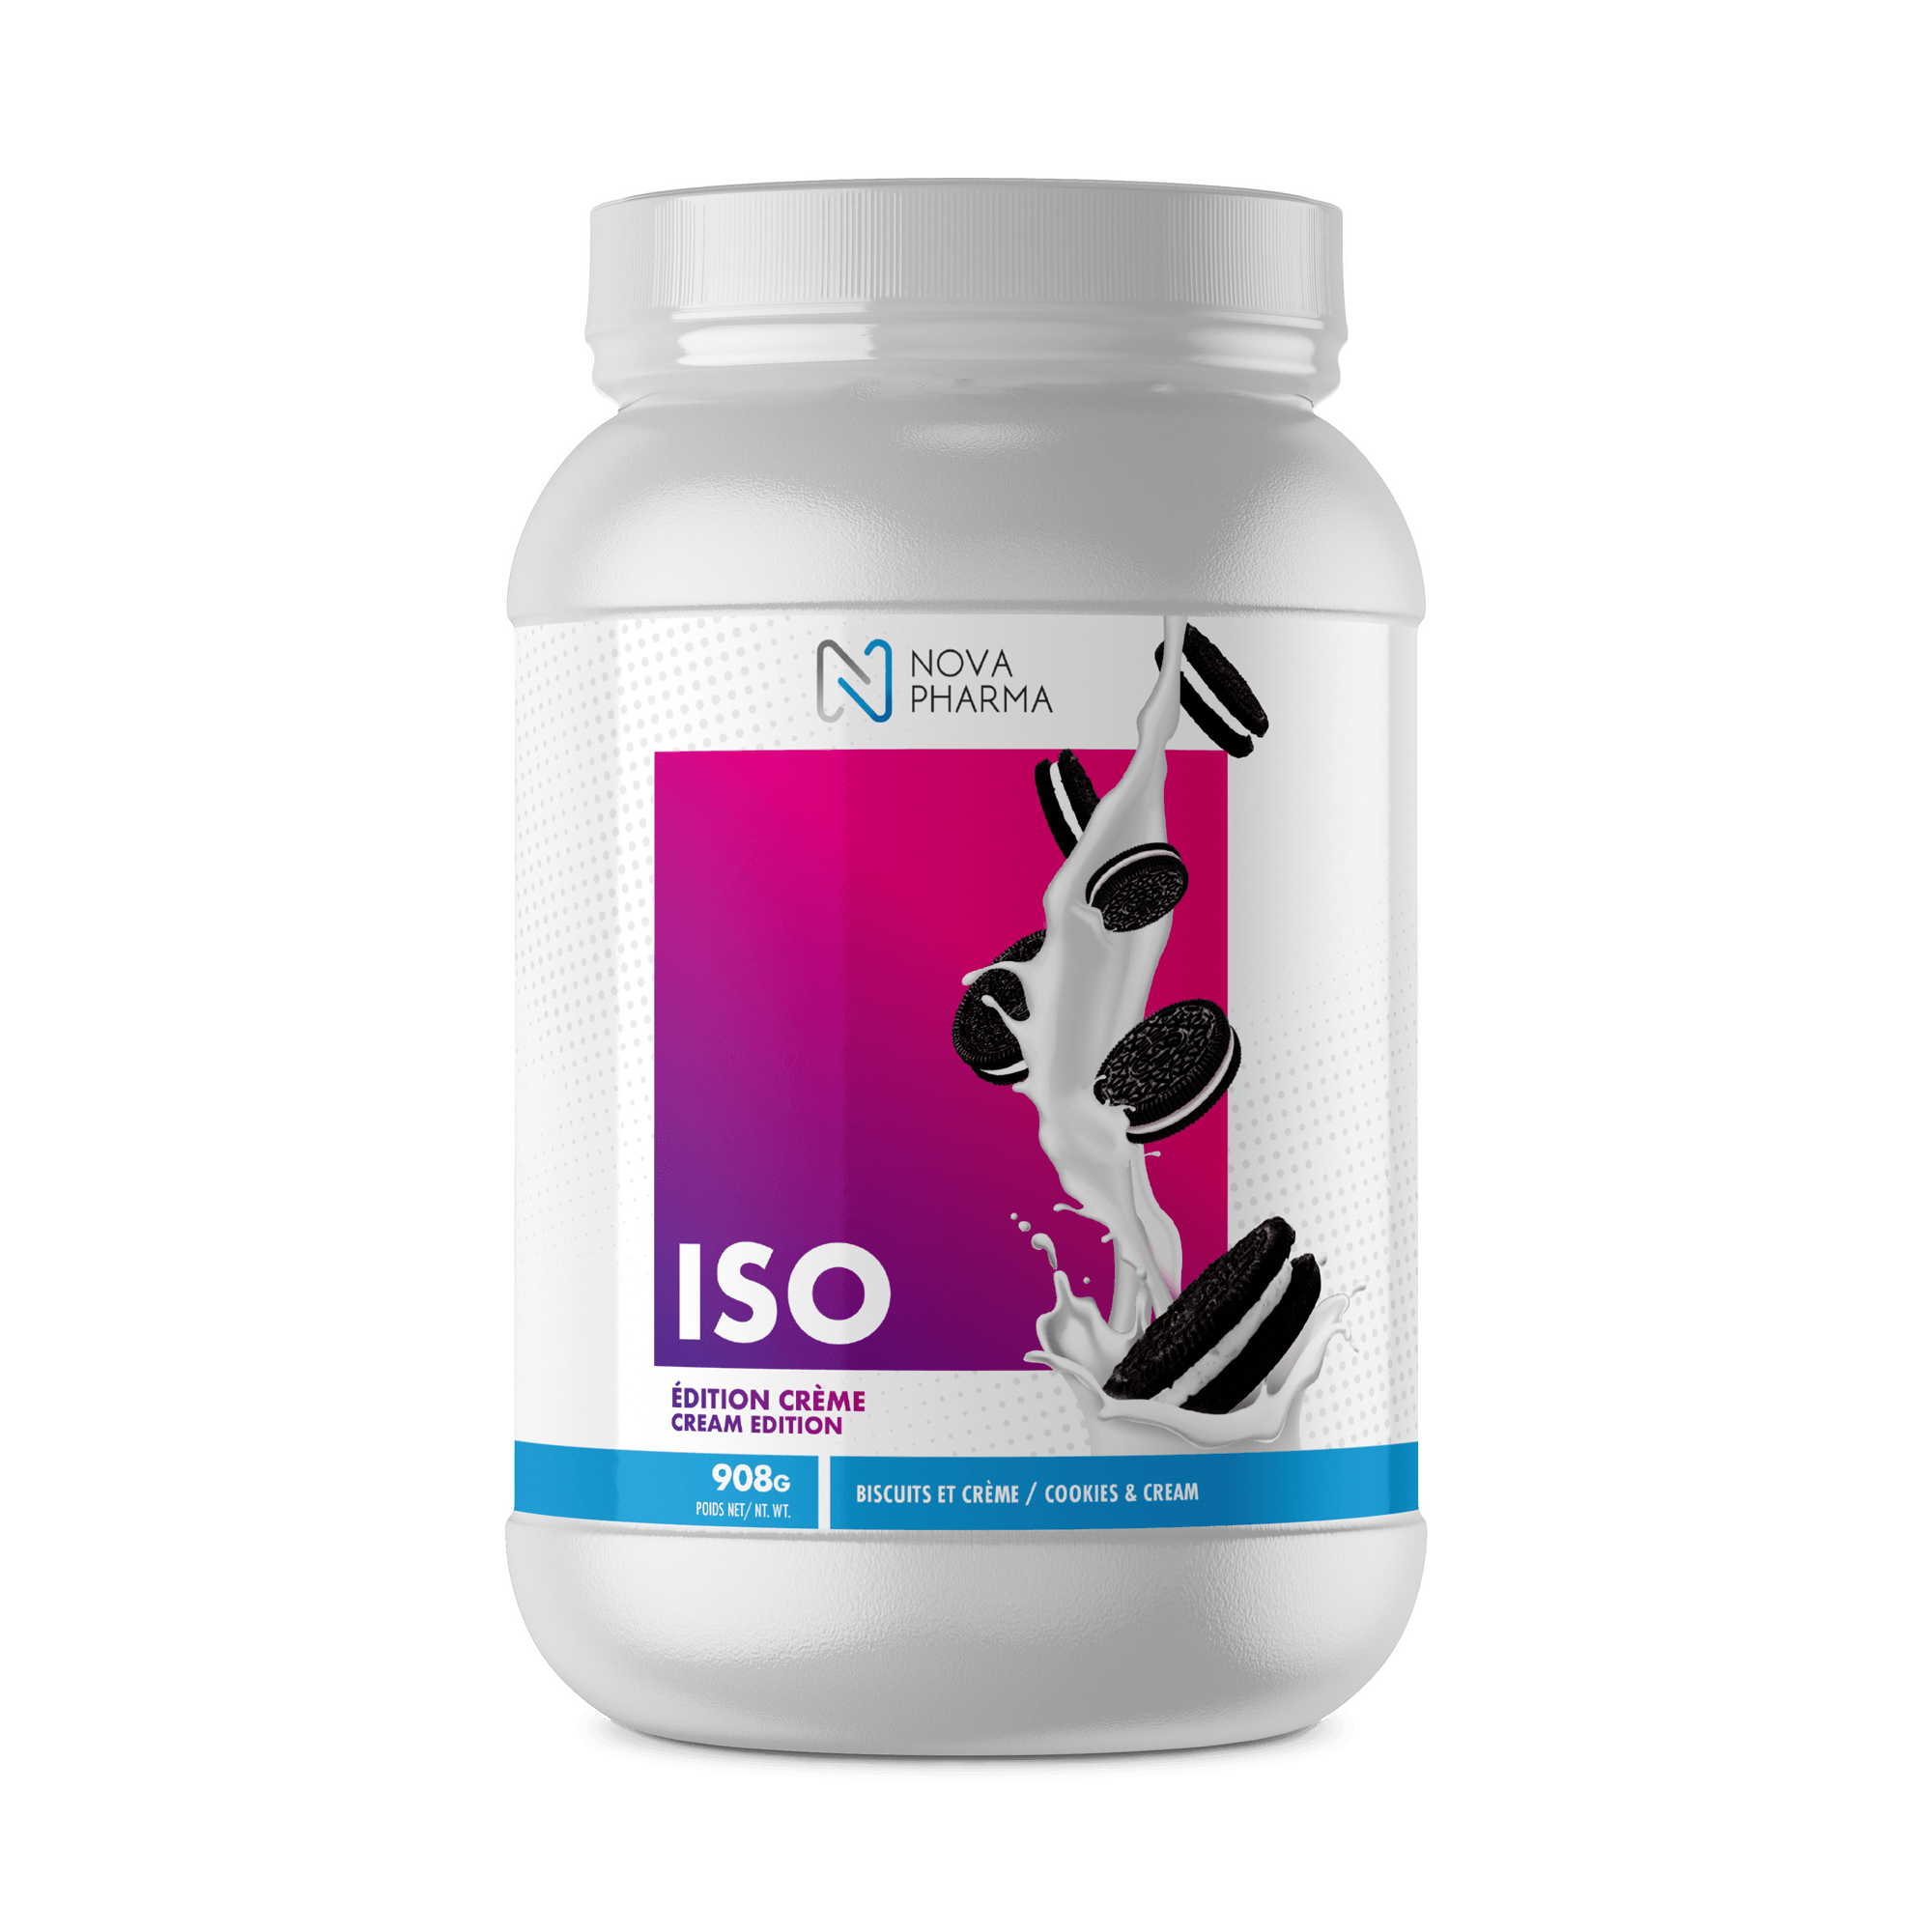 NOVA PHARMA - ISO Crème Protéine Édition Spécial - 53 Karat